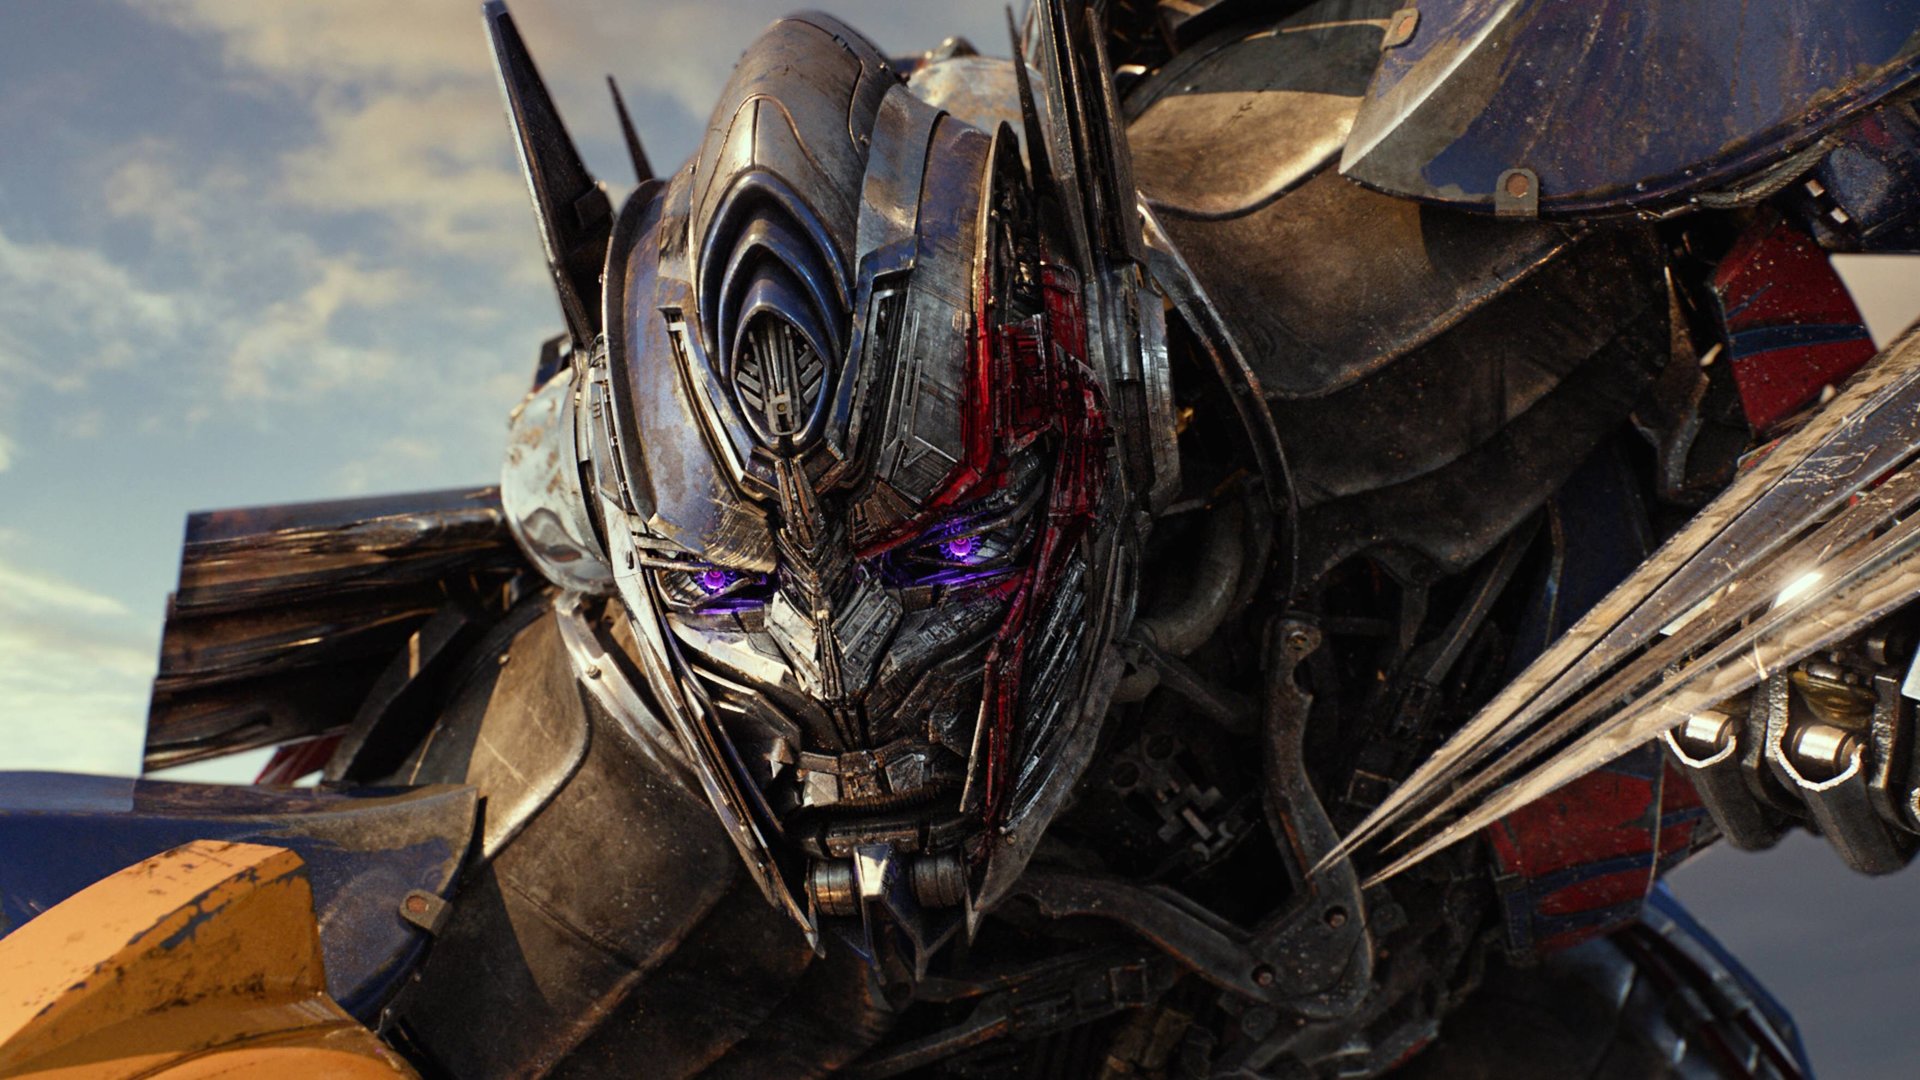 #„Transformers“-Namen: So heißen die Autobots und Decepticons